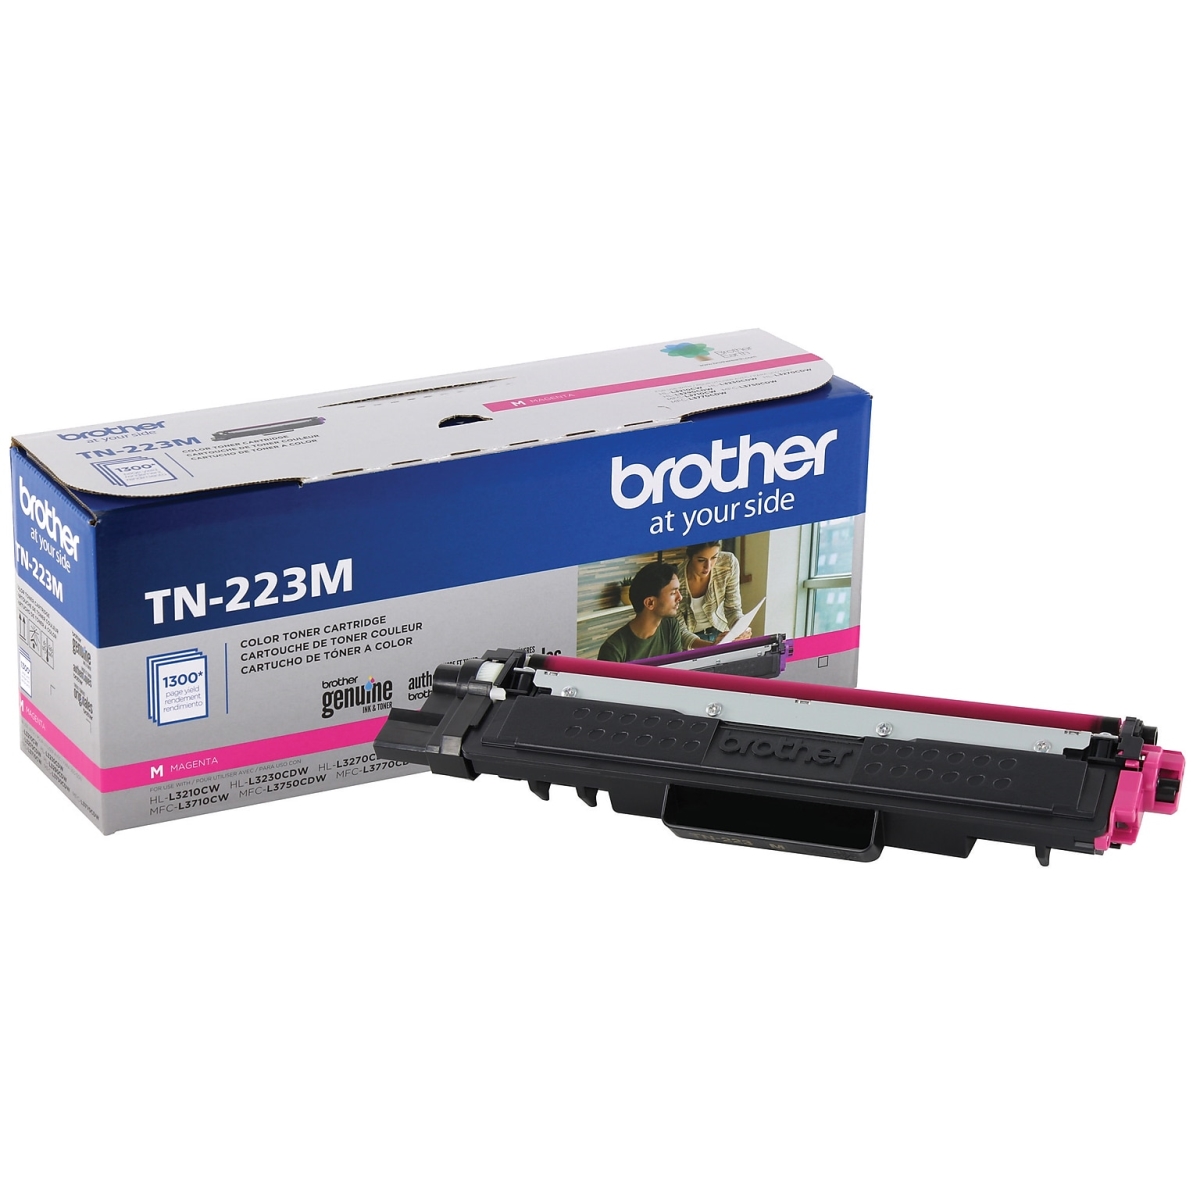 HVB-TN223M New Compatible Brother TN-223M Magenta Toner Cartridge for MFC-L3710CW - MFC-L3750CDW & L3770CDW - 1.8K Yield -  Hi-Value Brand